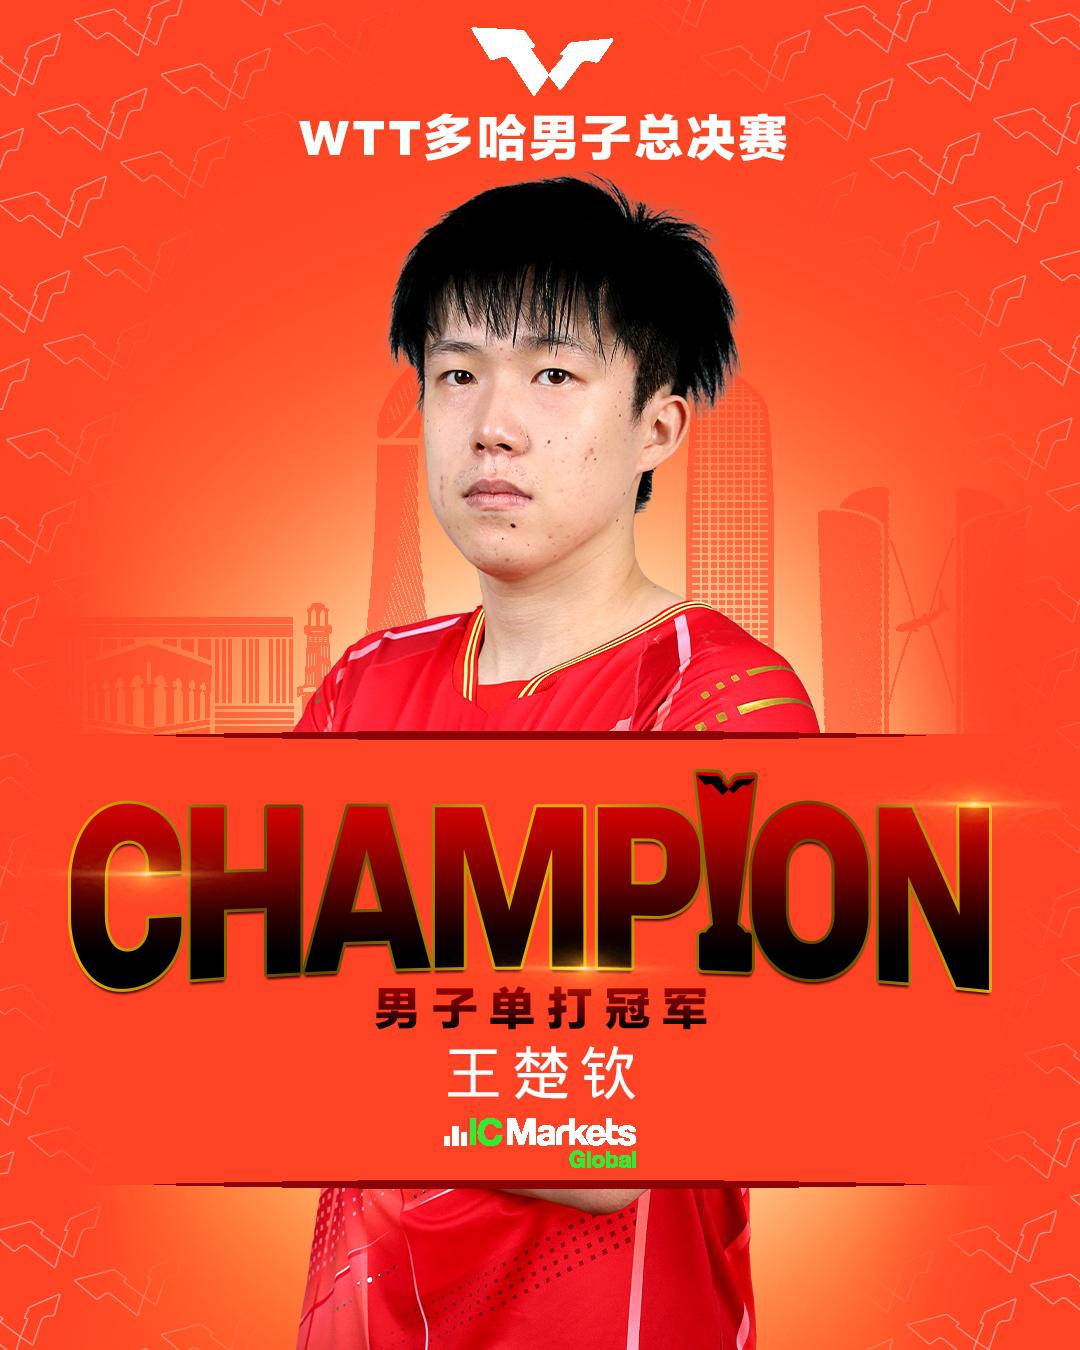 中国体育彩票开售世界杯冠军、冠亚军竞猜